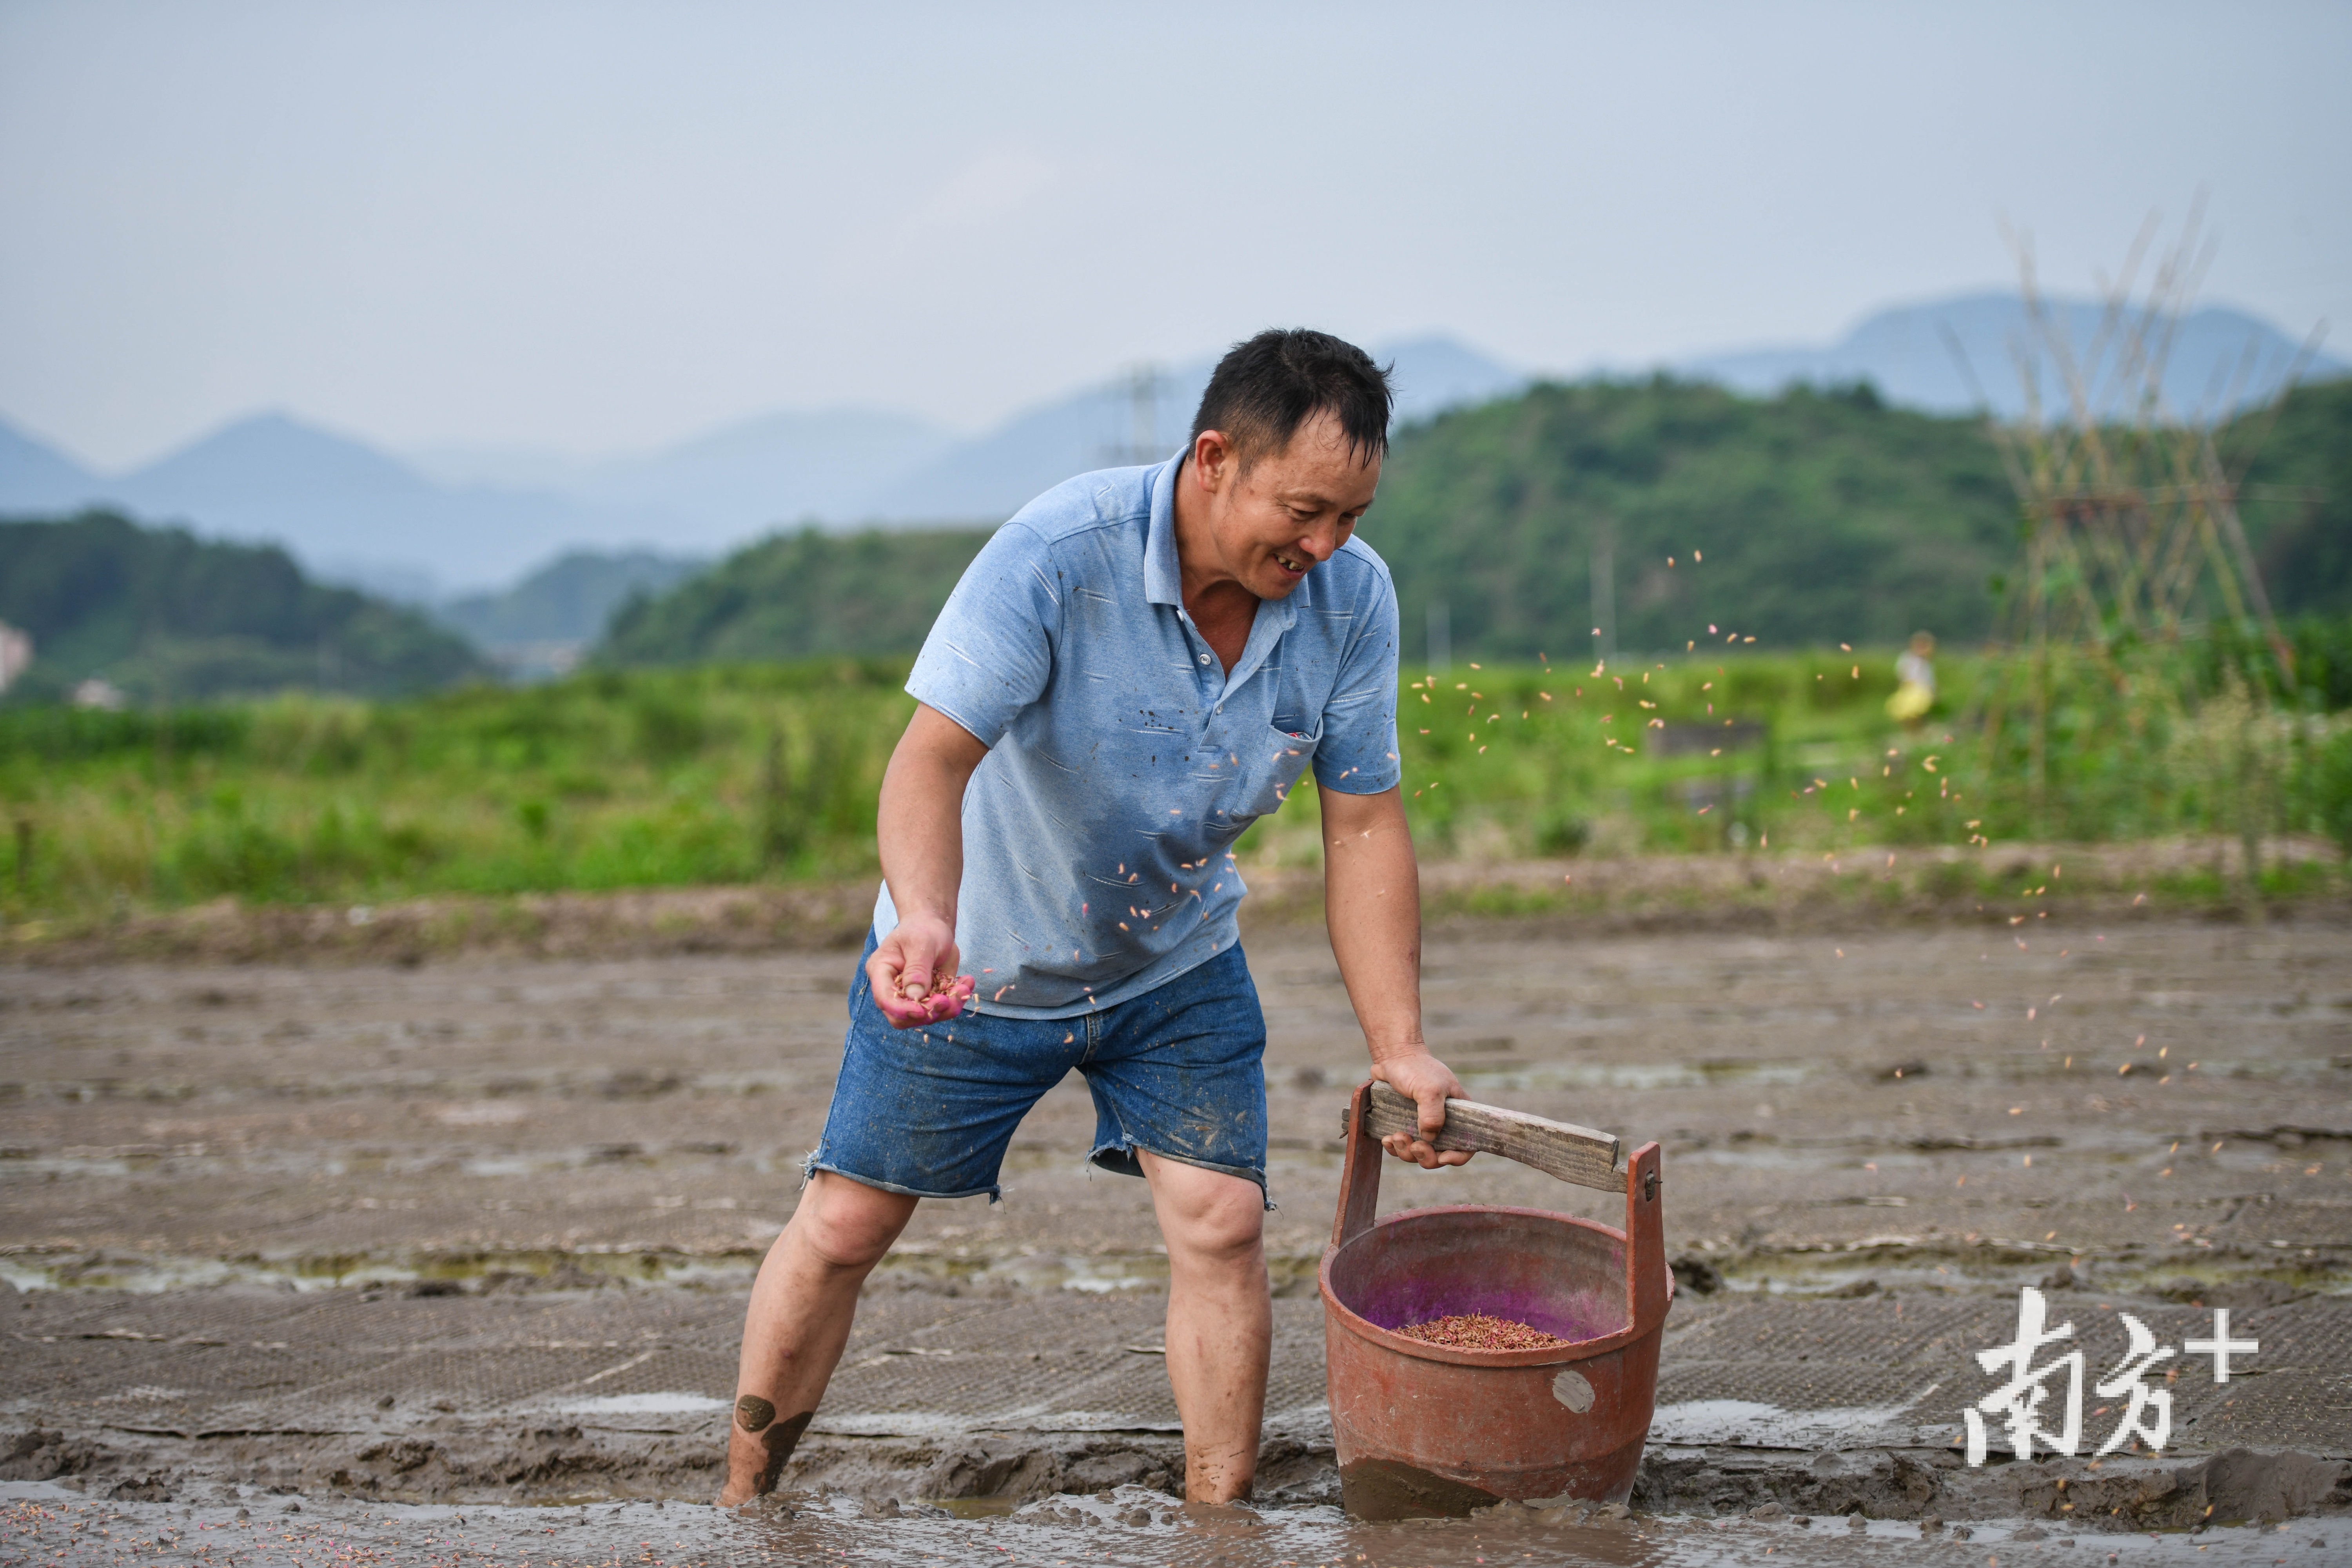 吴战辉在田地里忙着播种、育秧。